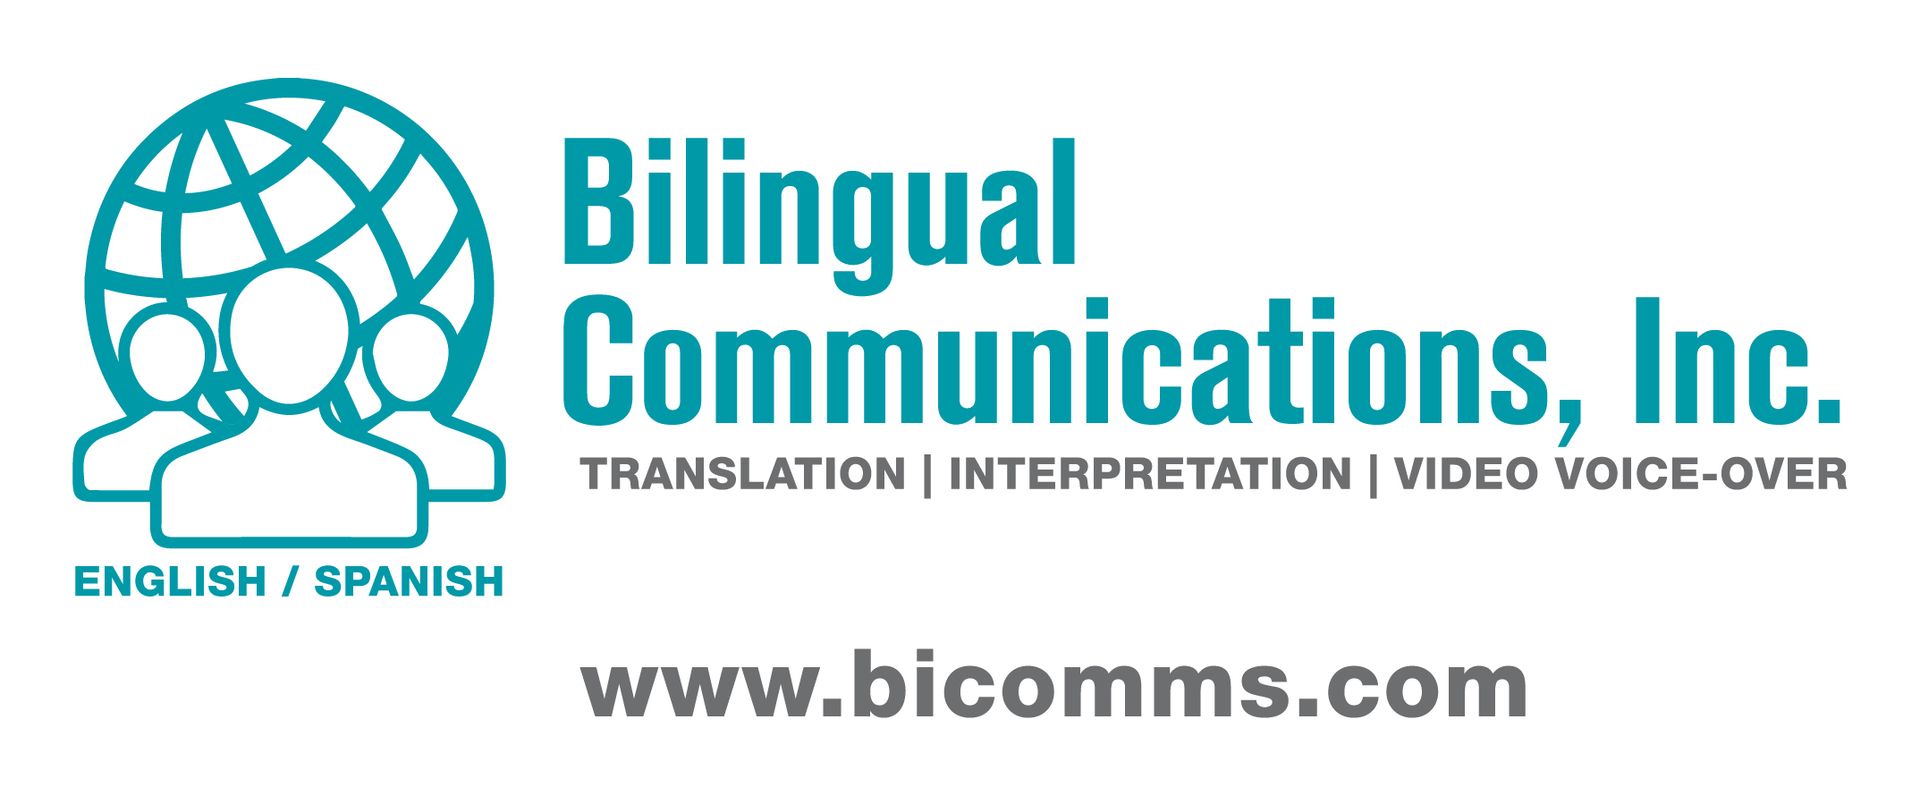 Bilingual Communications, Inc.